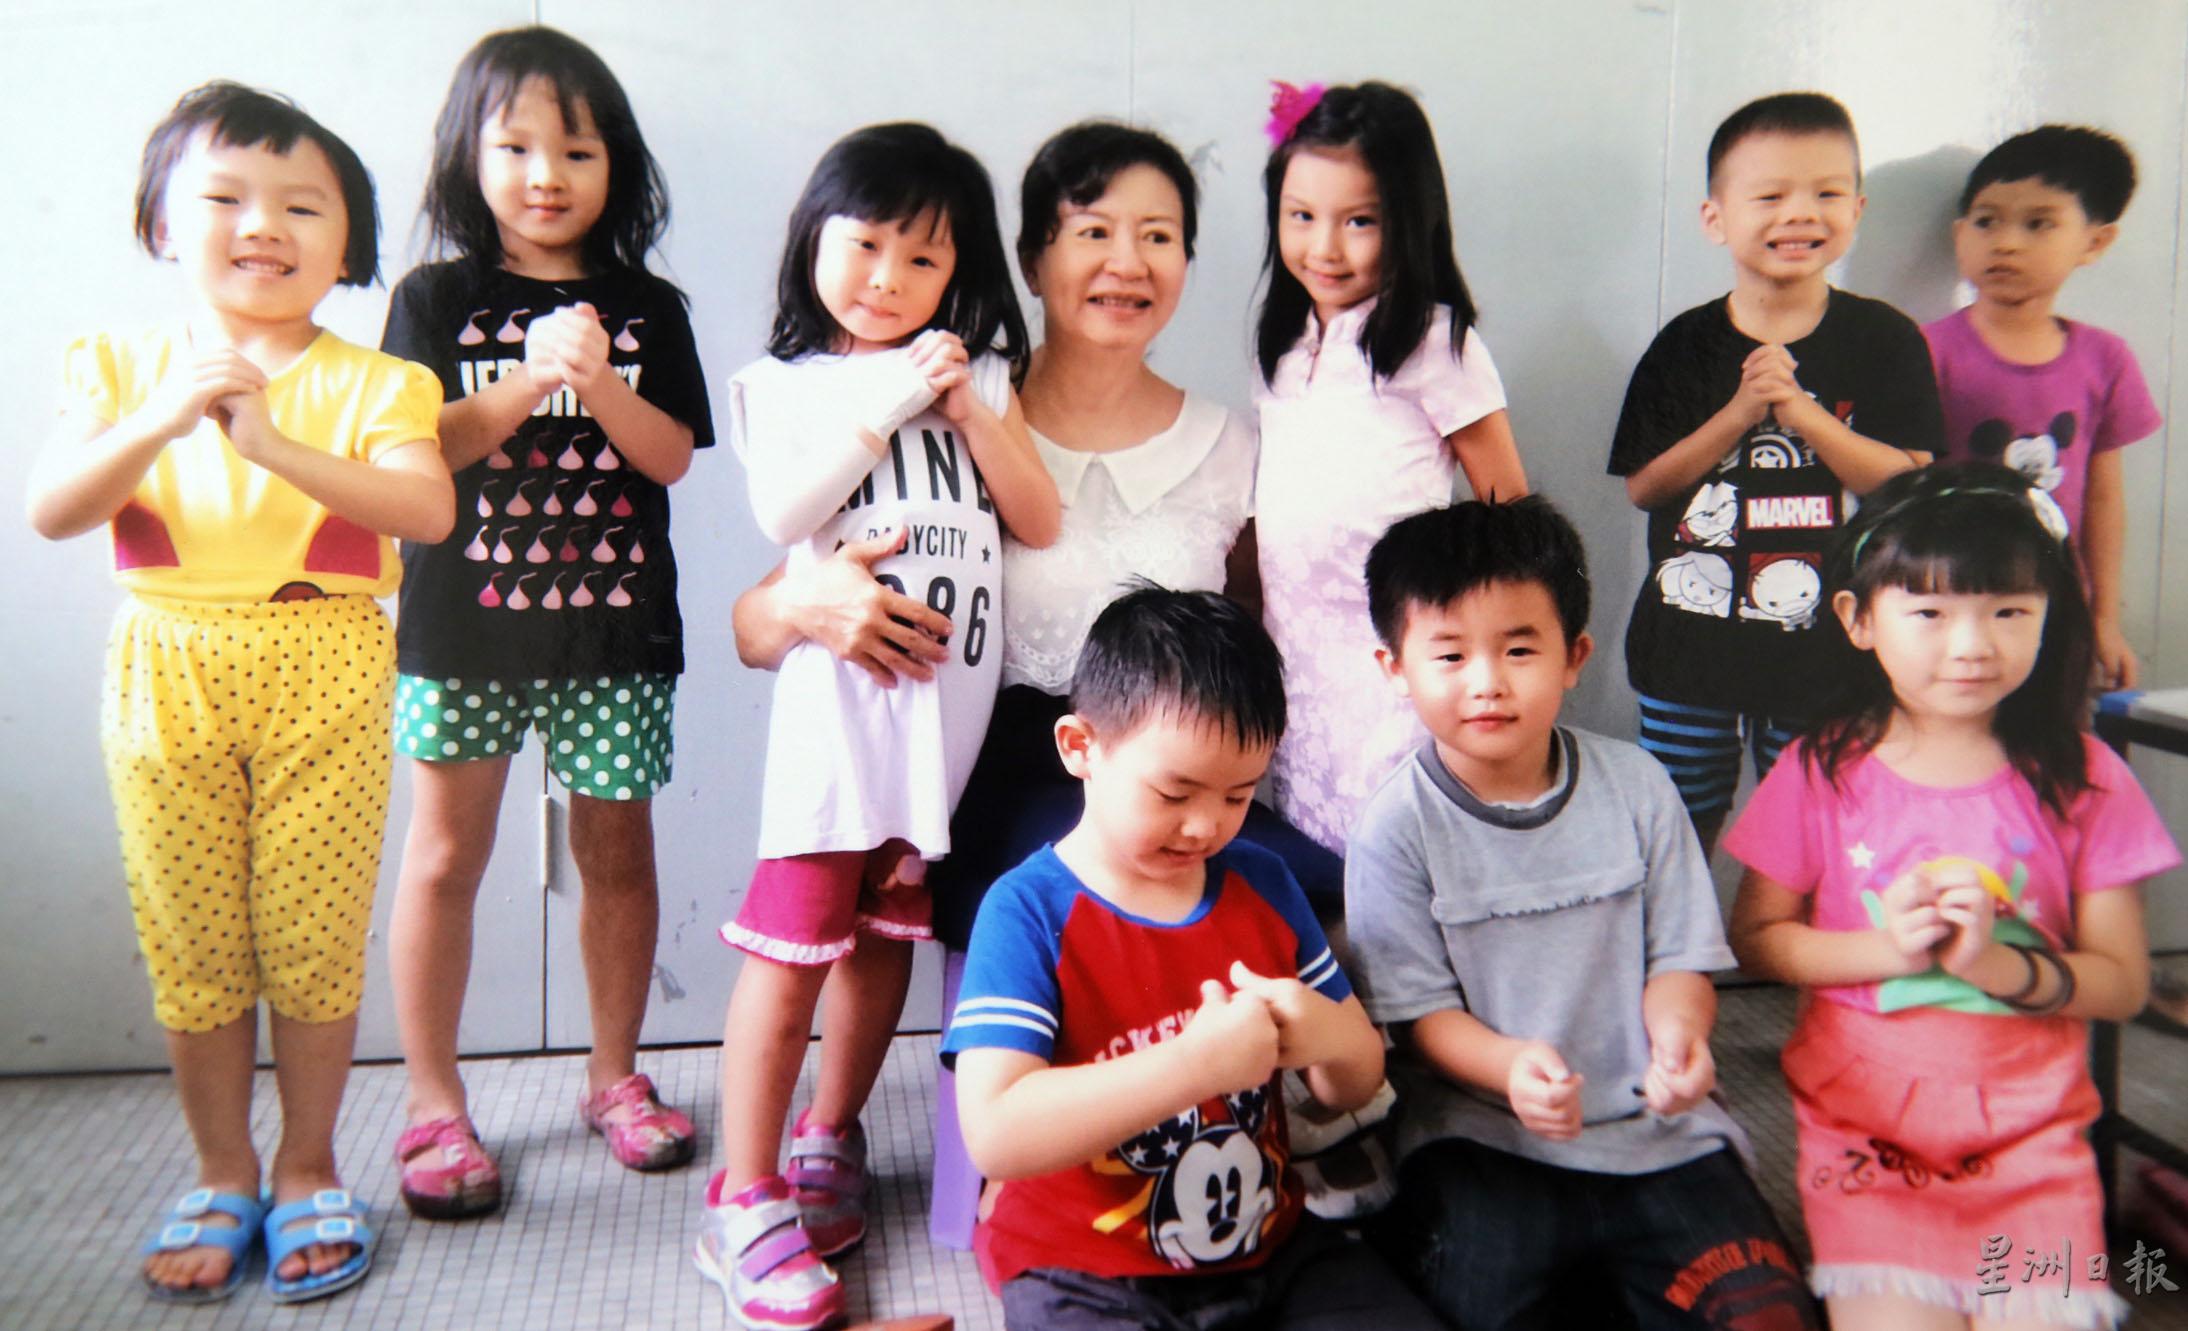 小孩们都爱粘着罗静芬（后排左四）。

